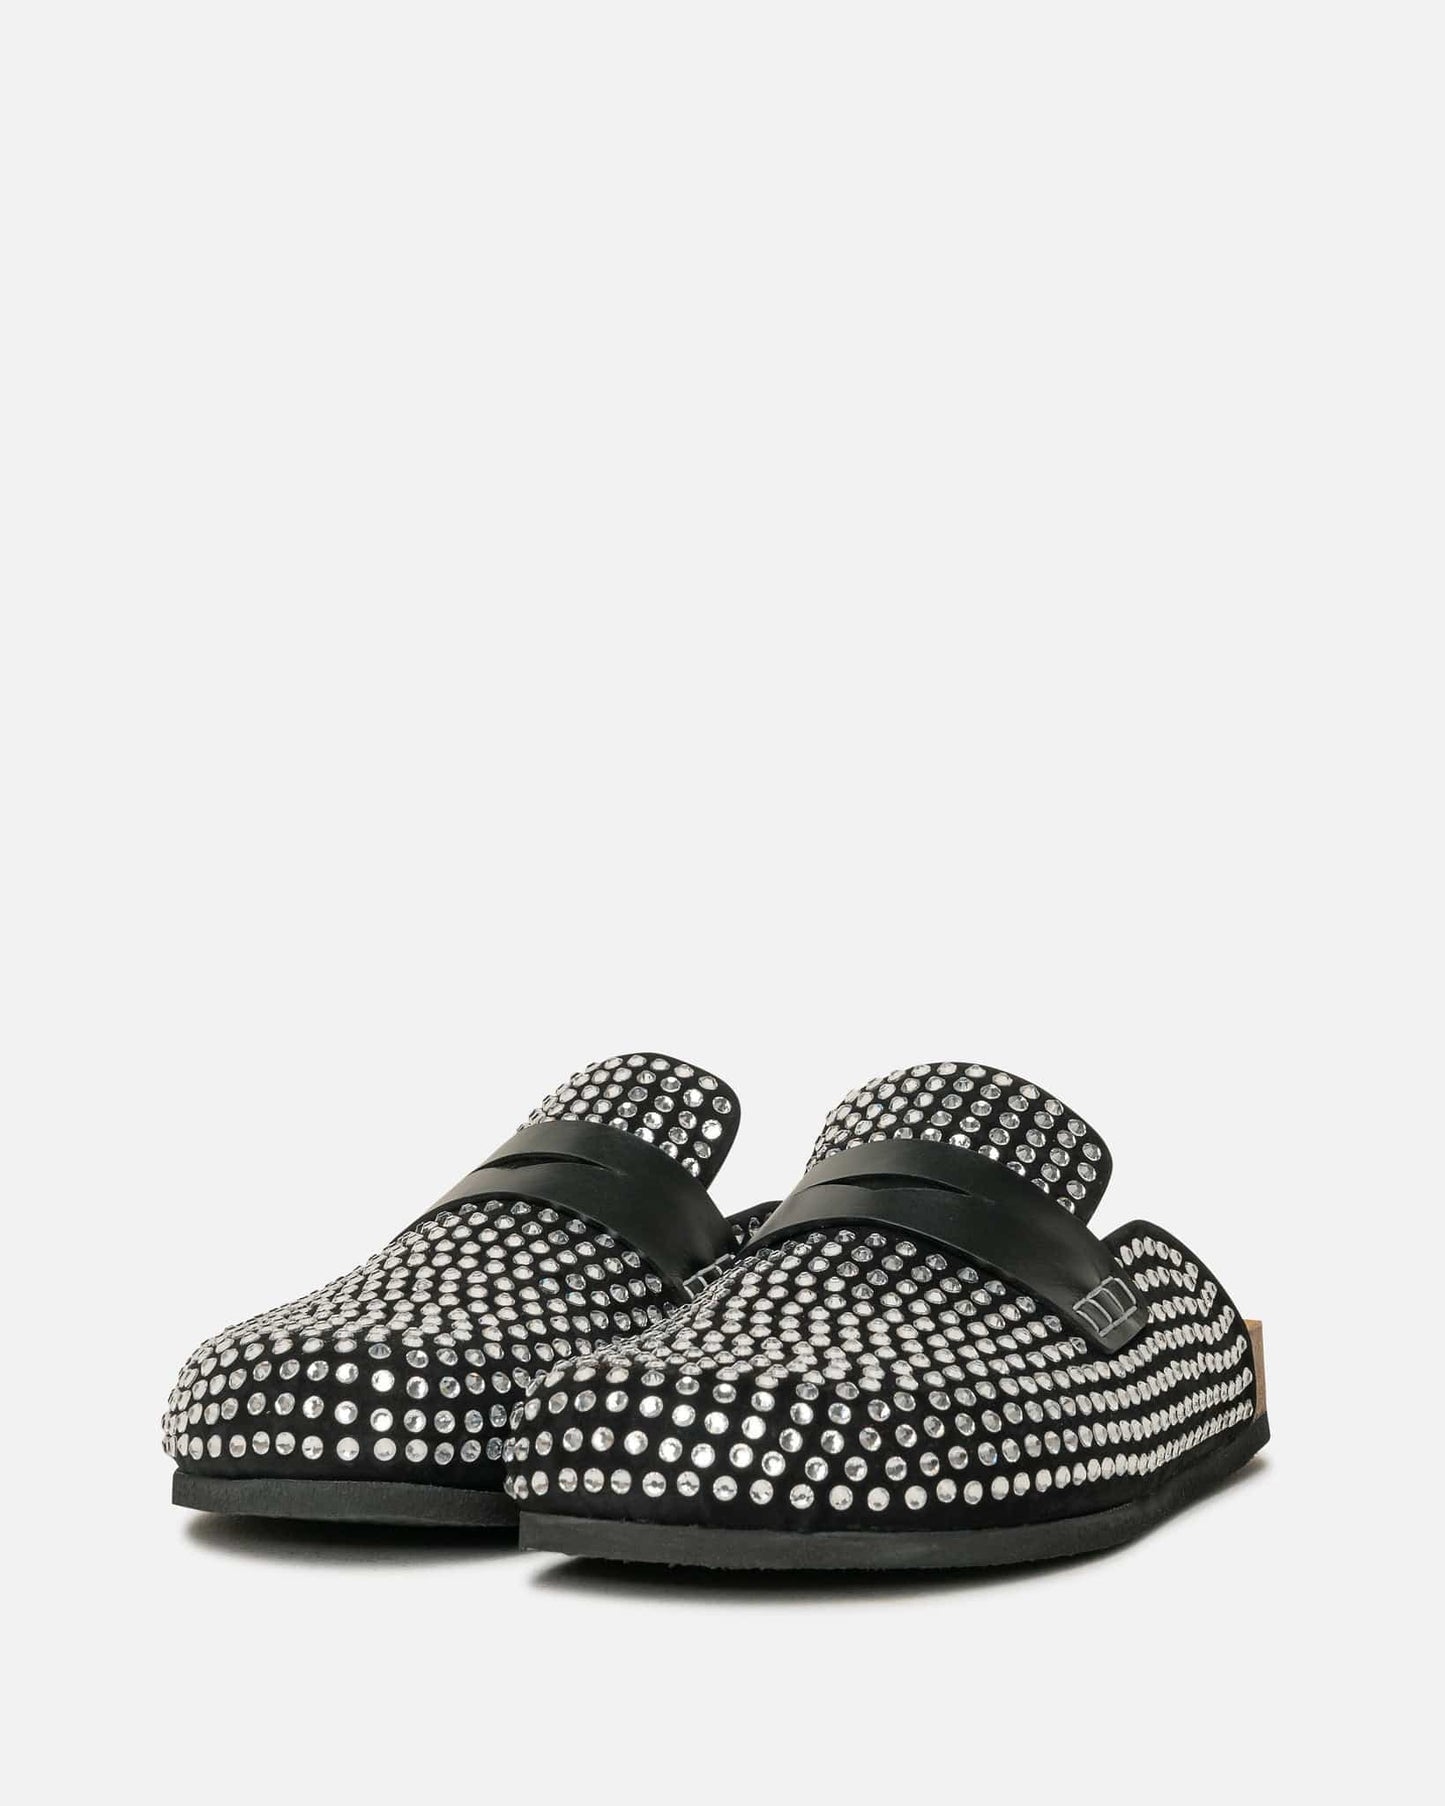 JW Anderson Men's Shoes Crystal Embellished Loafers in Black